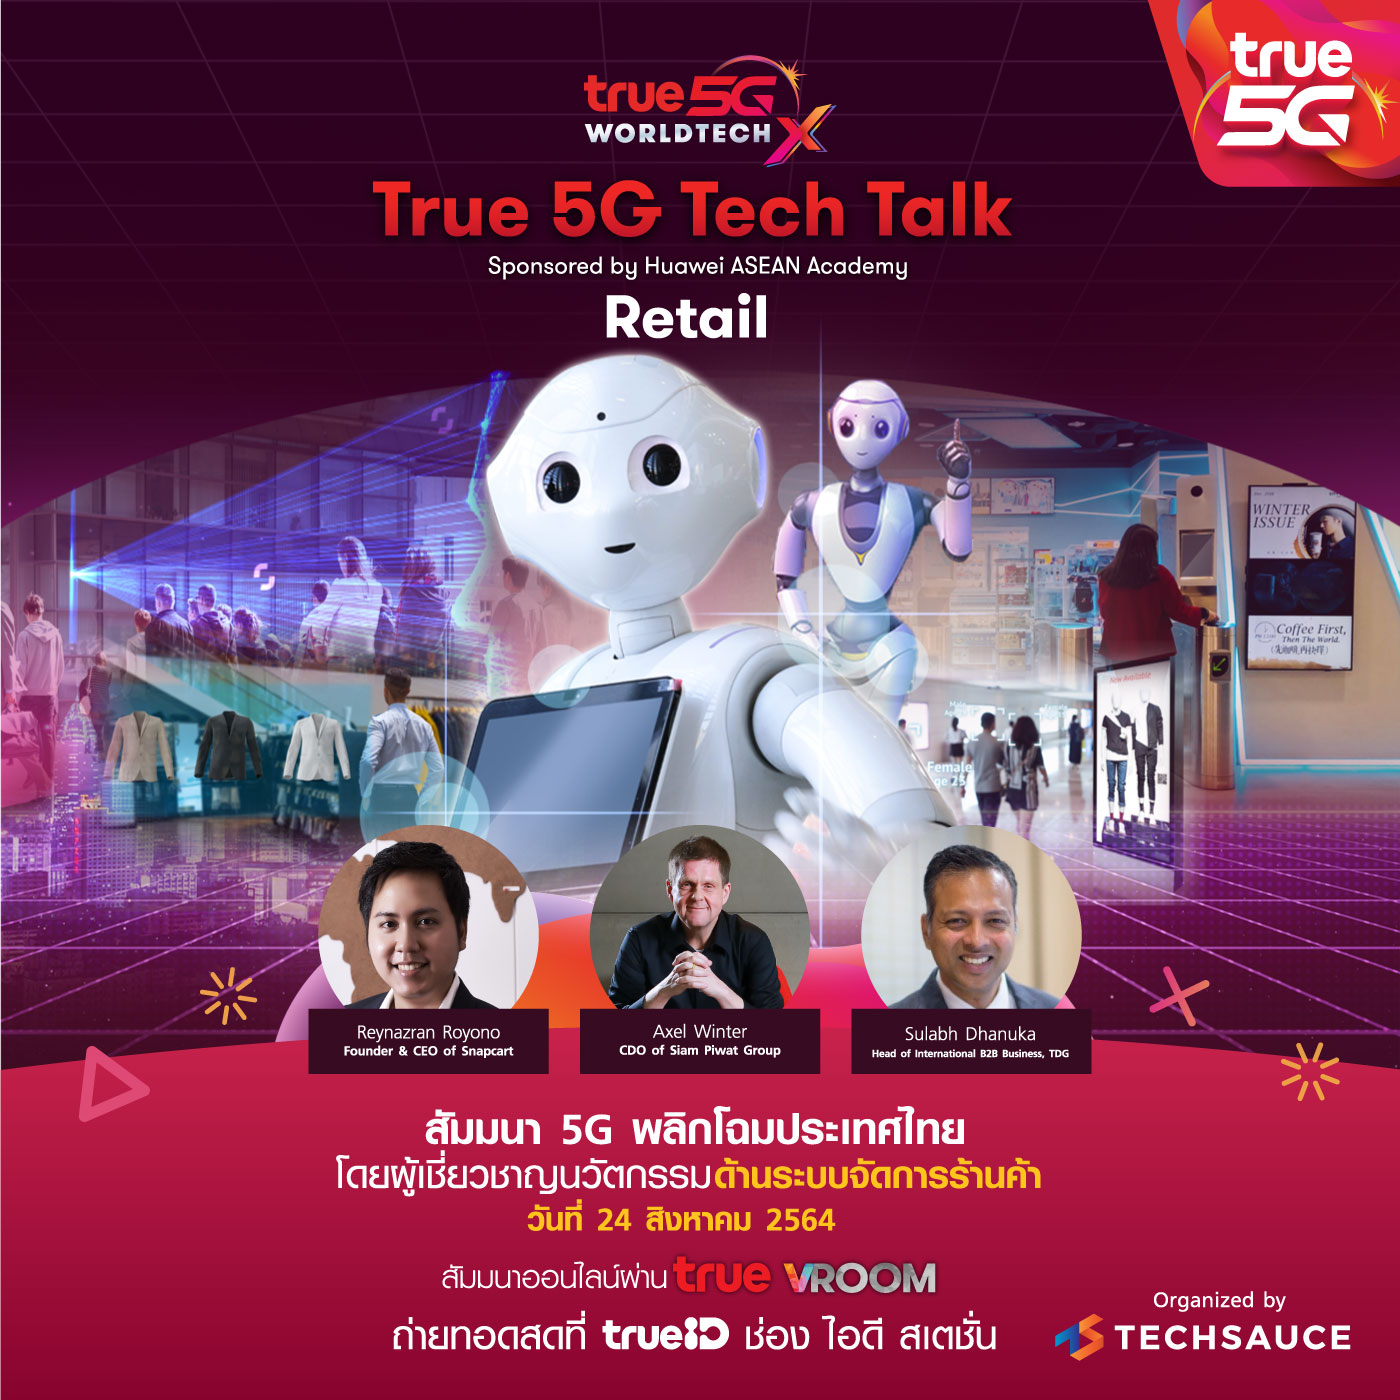 ปักหมุดปฏิทิน… ร่วมฟัง True 5G Tech Talk ยกระดับธุรกิจรีเทล ทรู เปิดโลกค้าปลีกยุค 5G ในงานสัมมนา 5G พลิกโฉมประเทศไทย ครั้งที่ 3